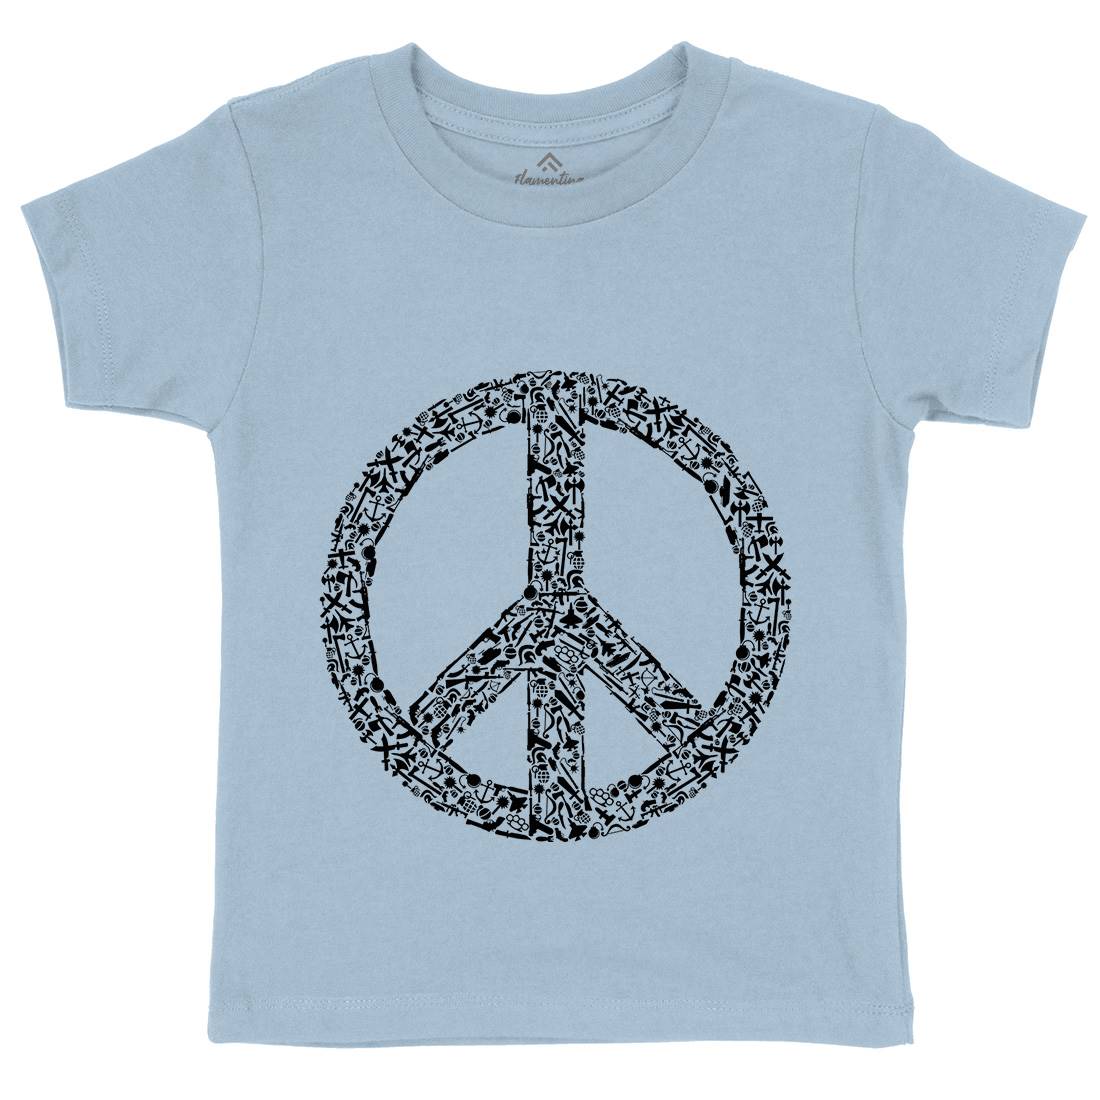 War Kids Crew Neck T-Shirt Peace B093